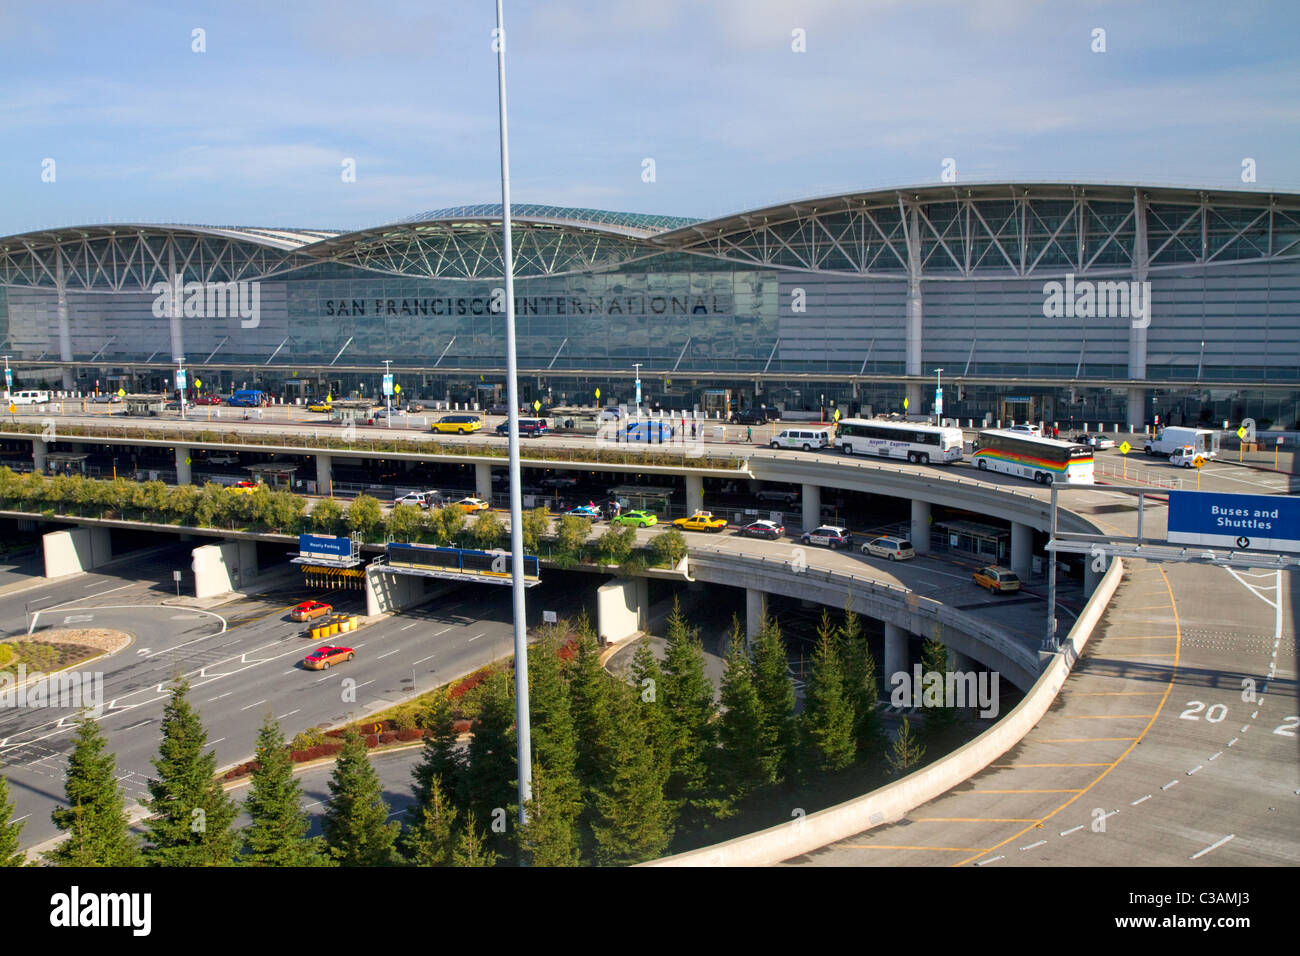 San Francisco International Airport Terminal situé au sud du centre-ville de San Francisco, Californie, USA. Banque D'Images